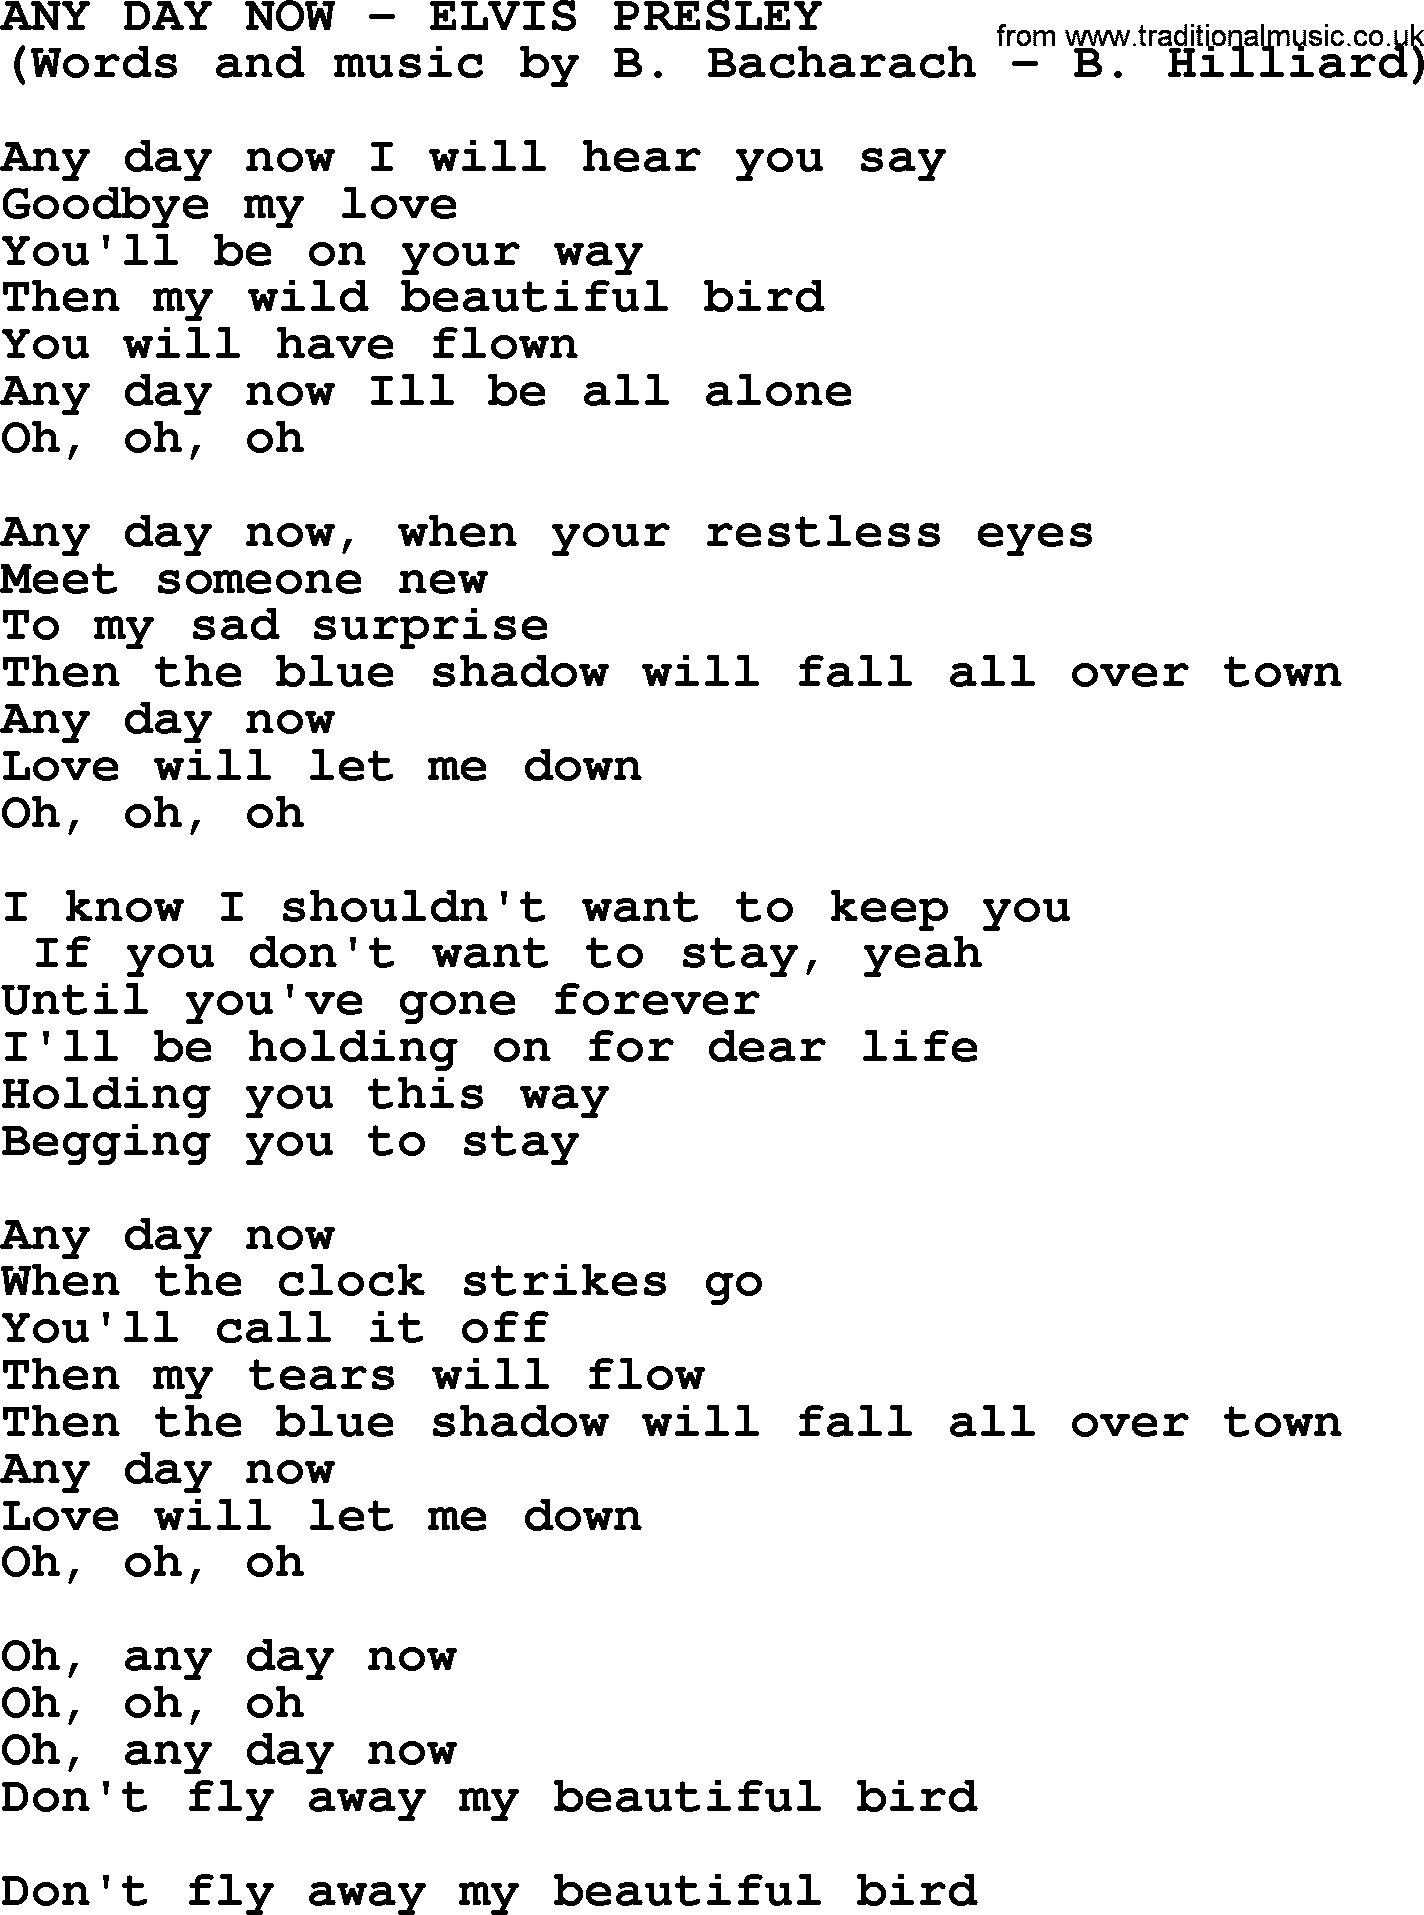 Elvis Presley song: Any Day Now lyrics